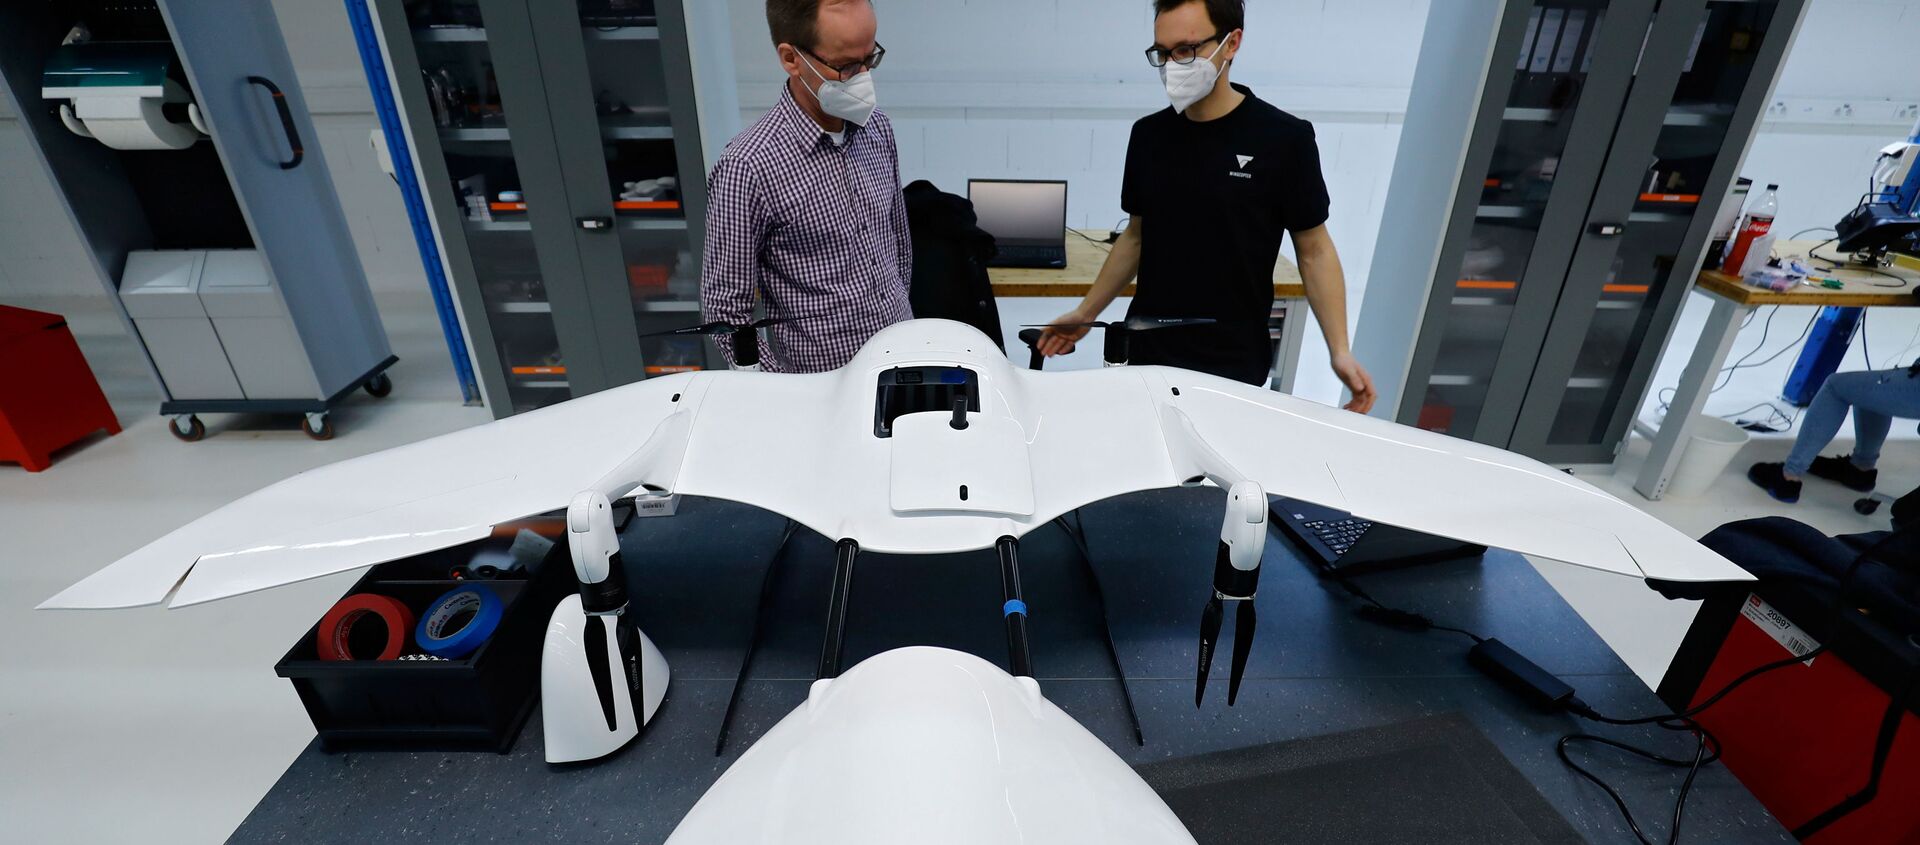 Сотрудники немецкой компании Wingcopter во время работы над создания дрона для перевозки медицинских продуктов  - Sputnik Абхазия, 1920, 03.02.2021